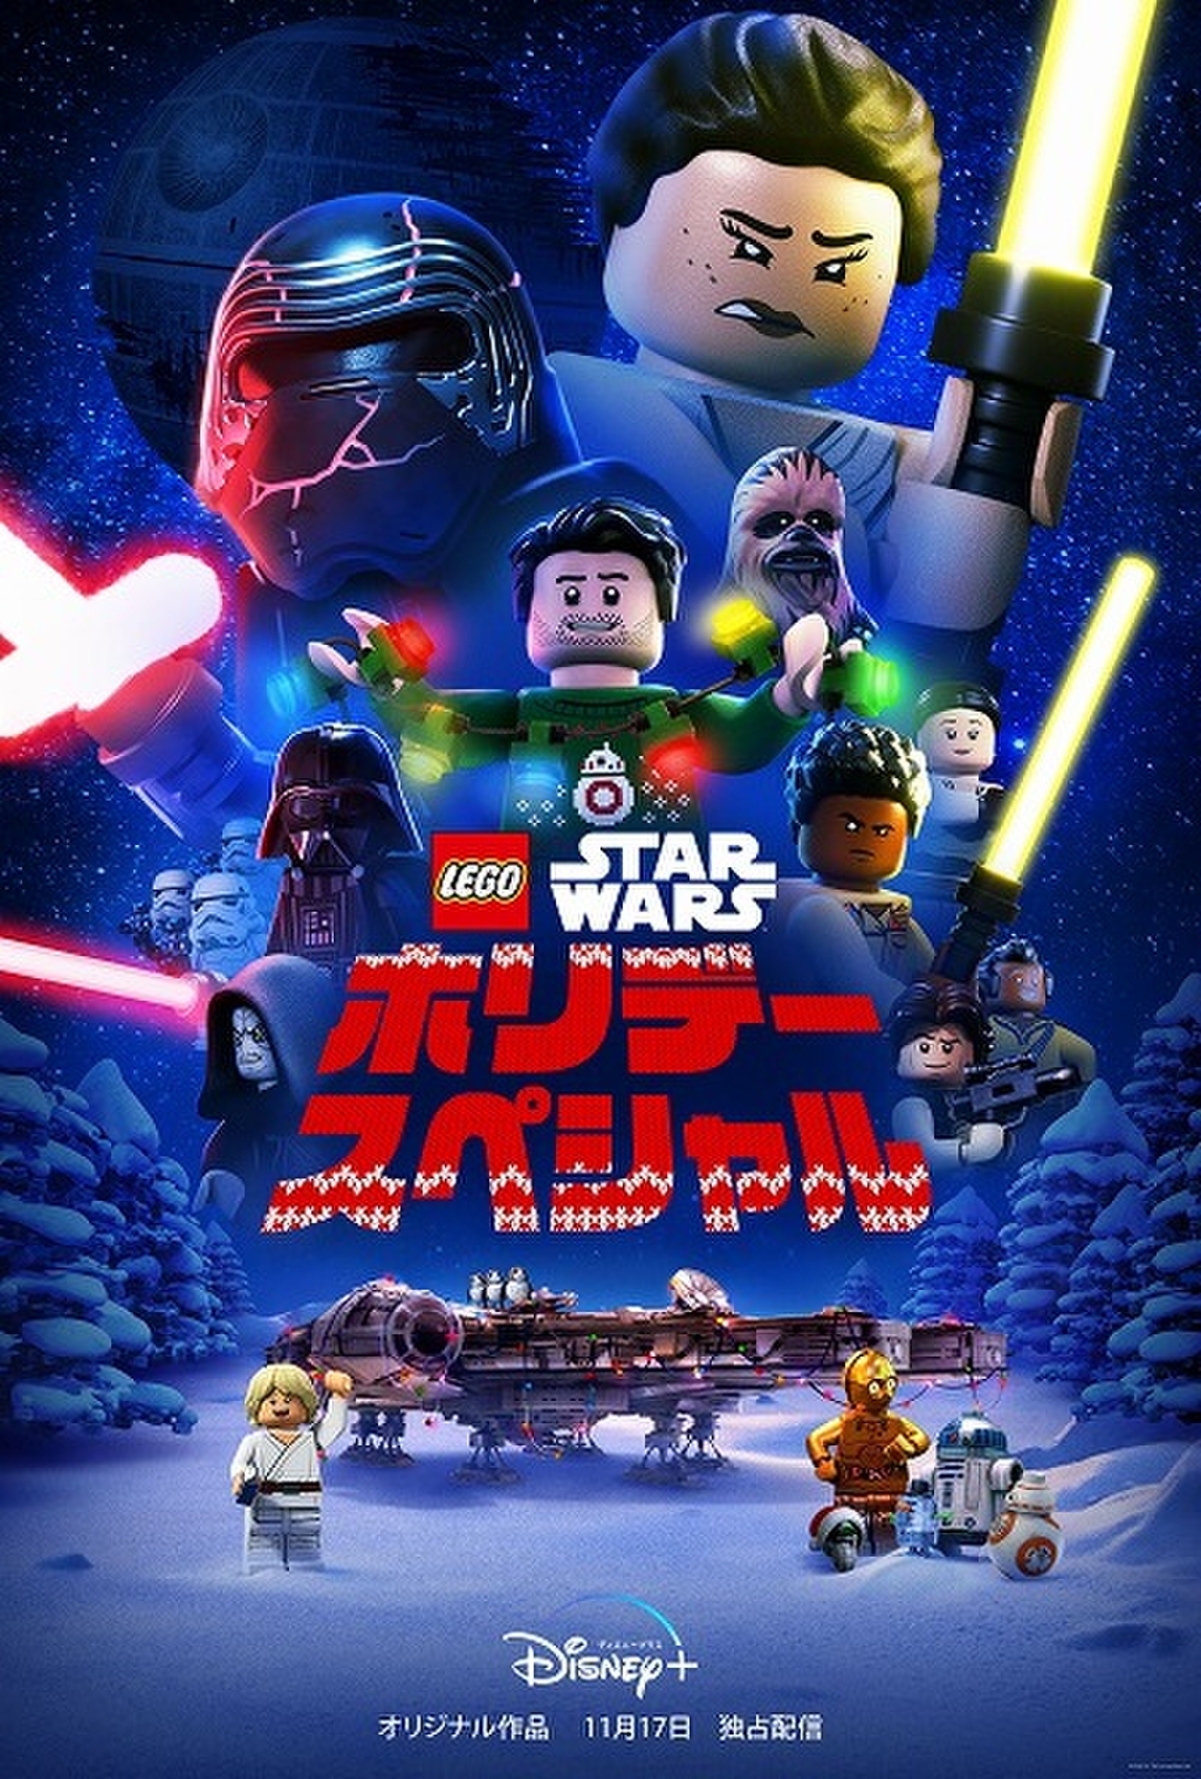 スター ウォーズ Lego 歴代キャラクターが時空を超えて繰り広げる冒険物語 Disney で11月17日配信 映画ニュース 映画 Com